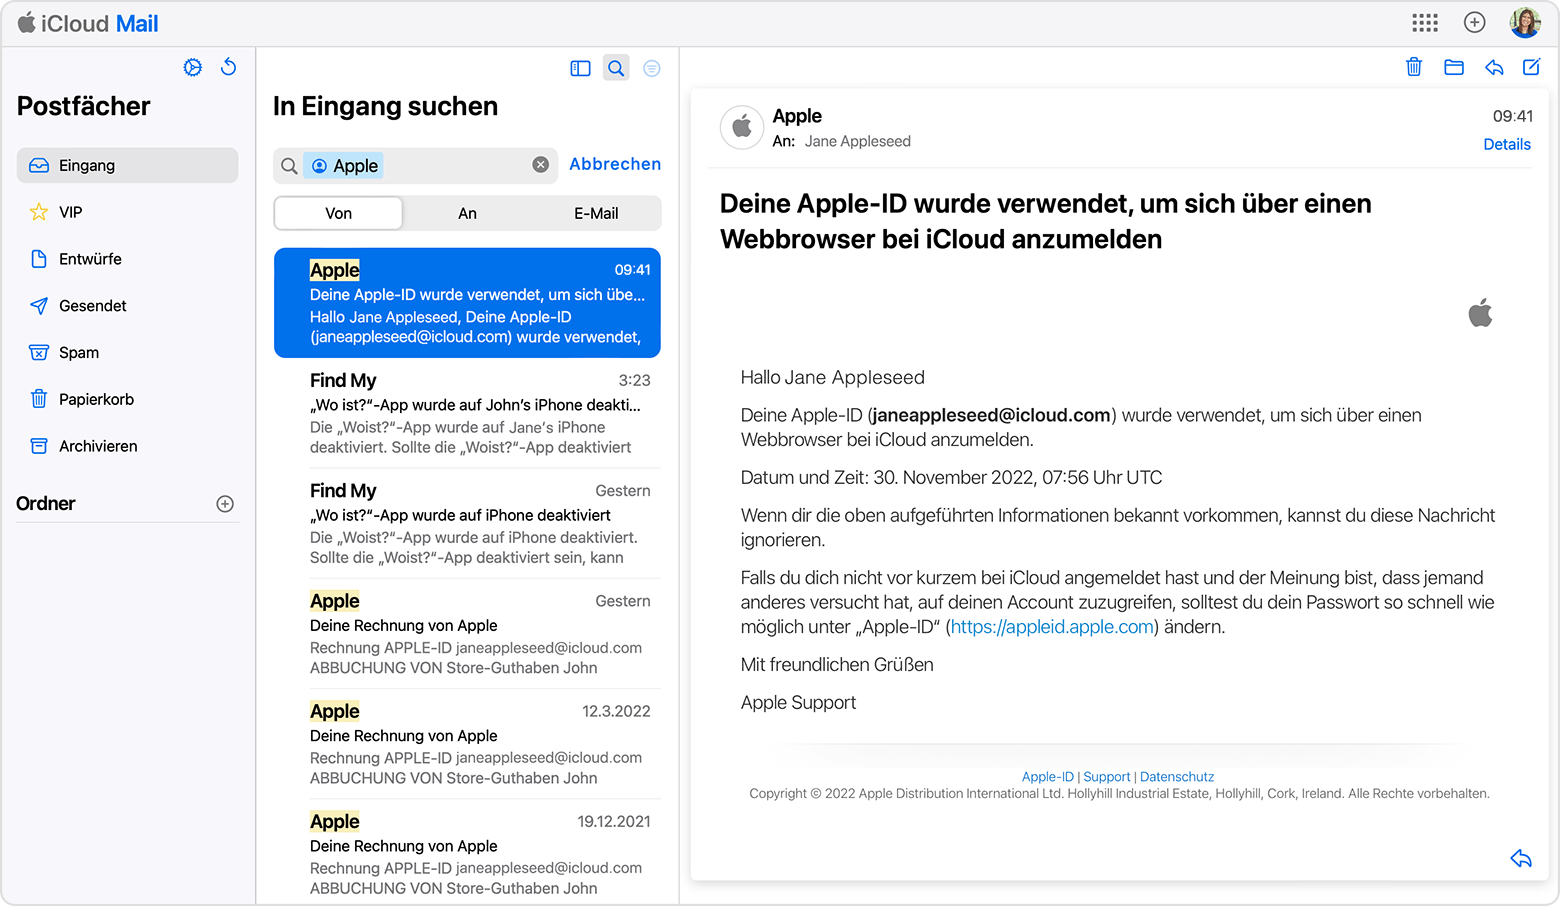 Die E-Mail-Adresse deiner Apple-ID finden, indem du nach E-Mails von Apple suchst